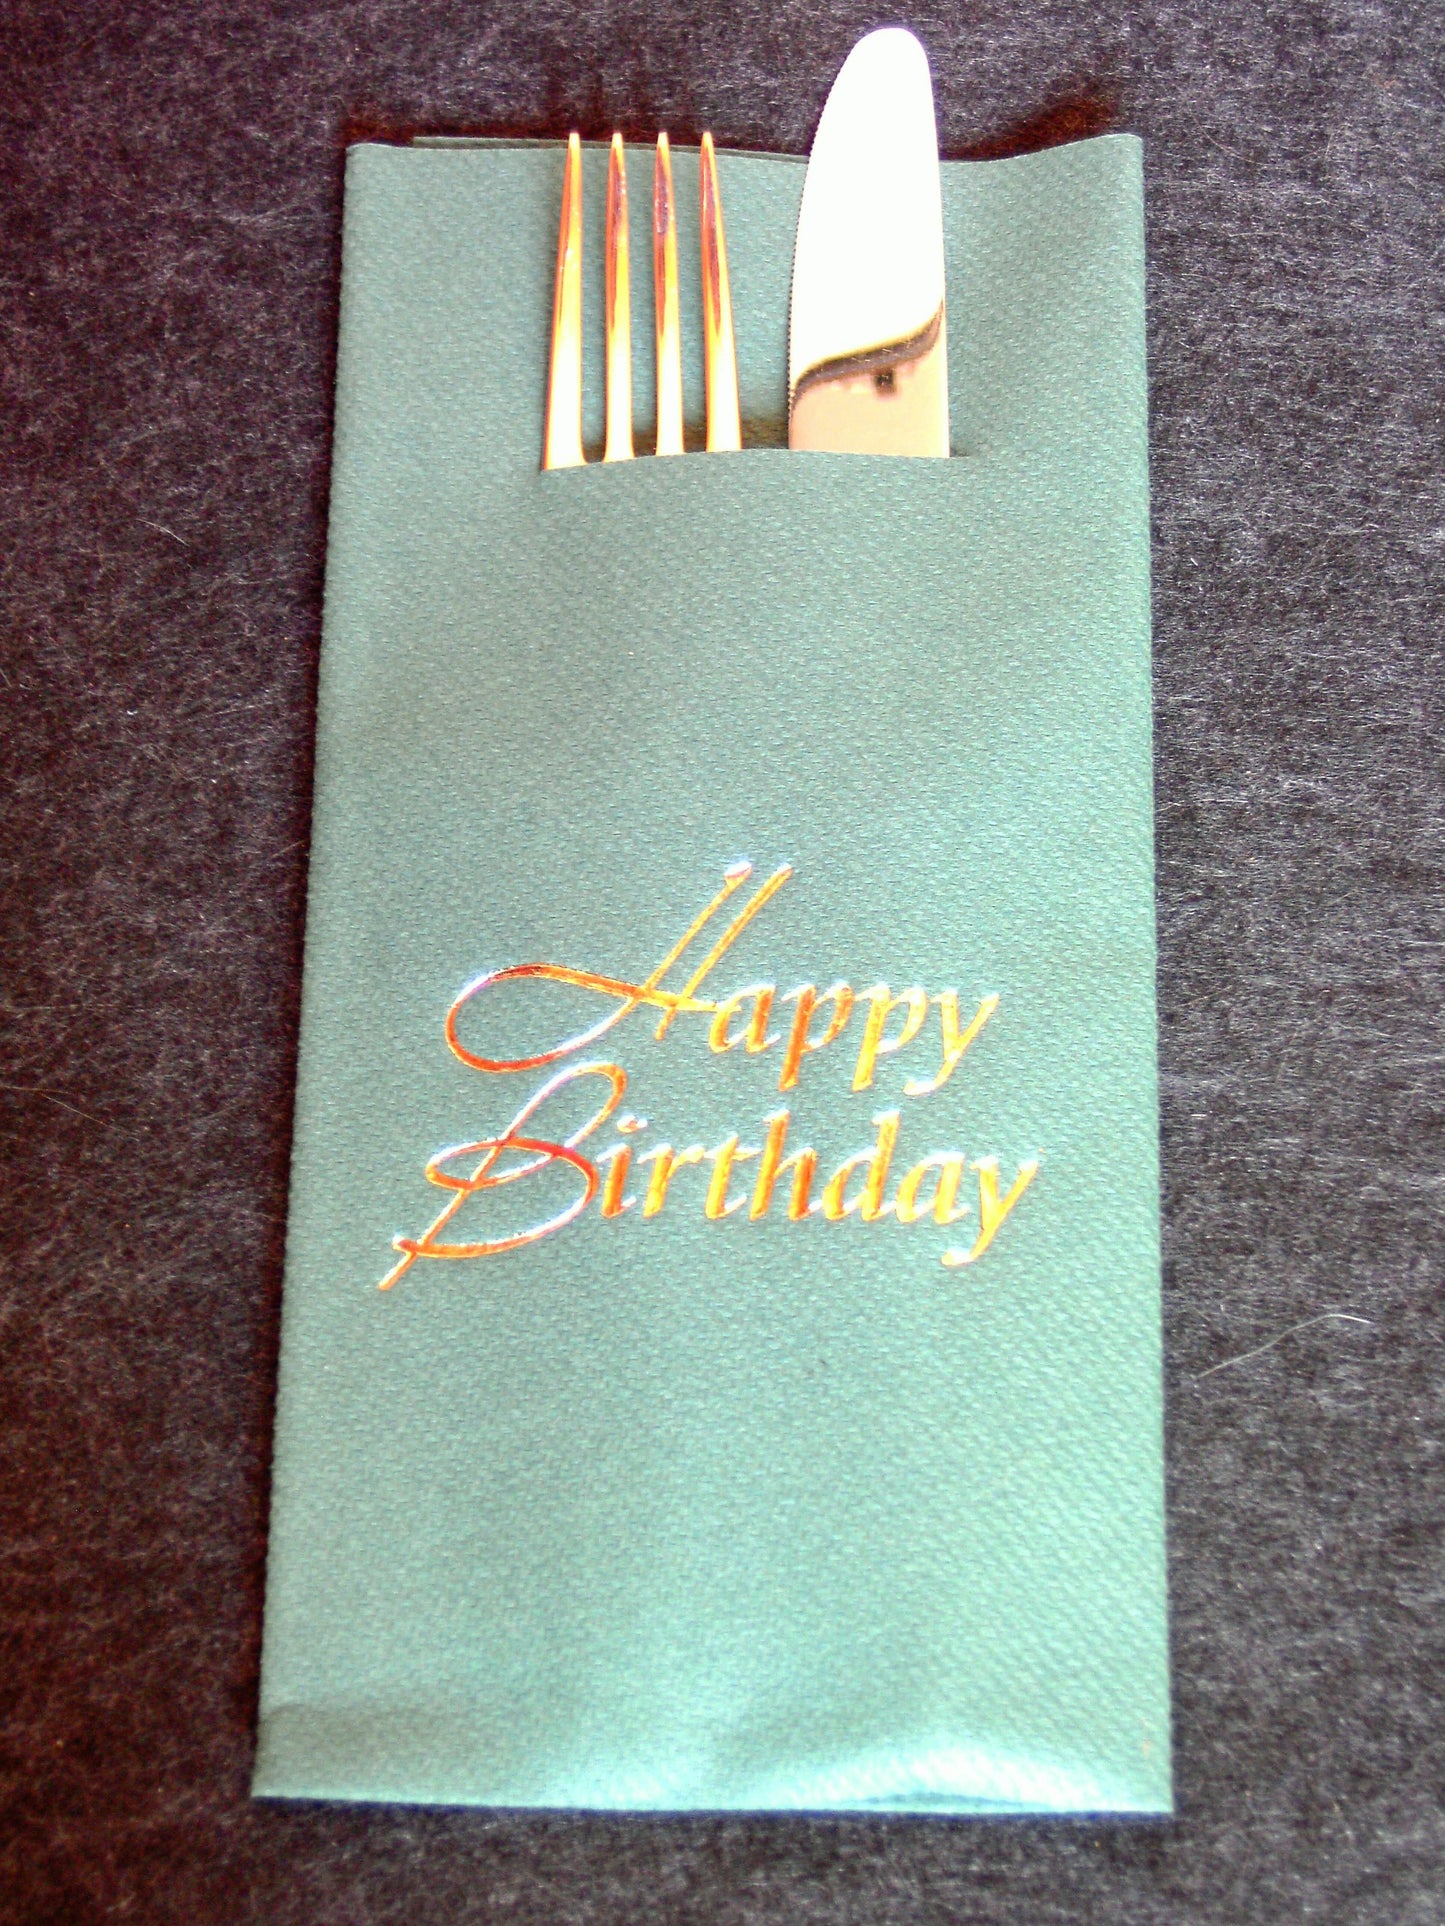 Pocket-Napkins "Happy Birthday"